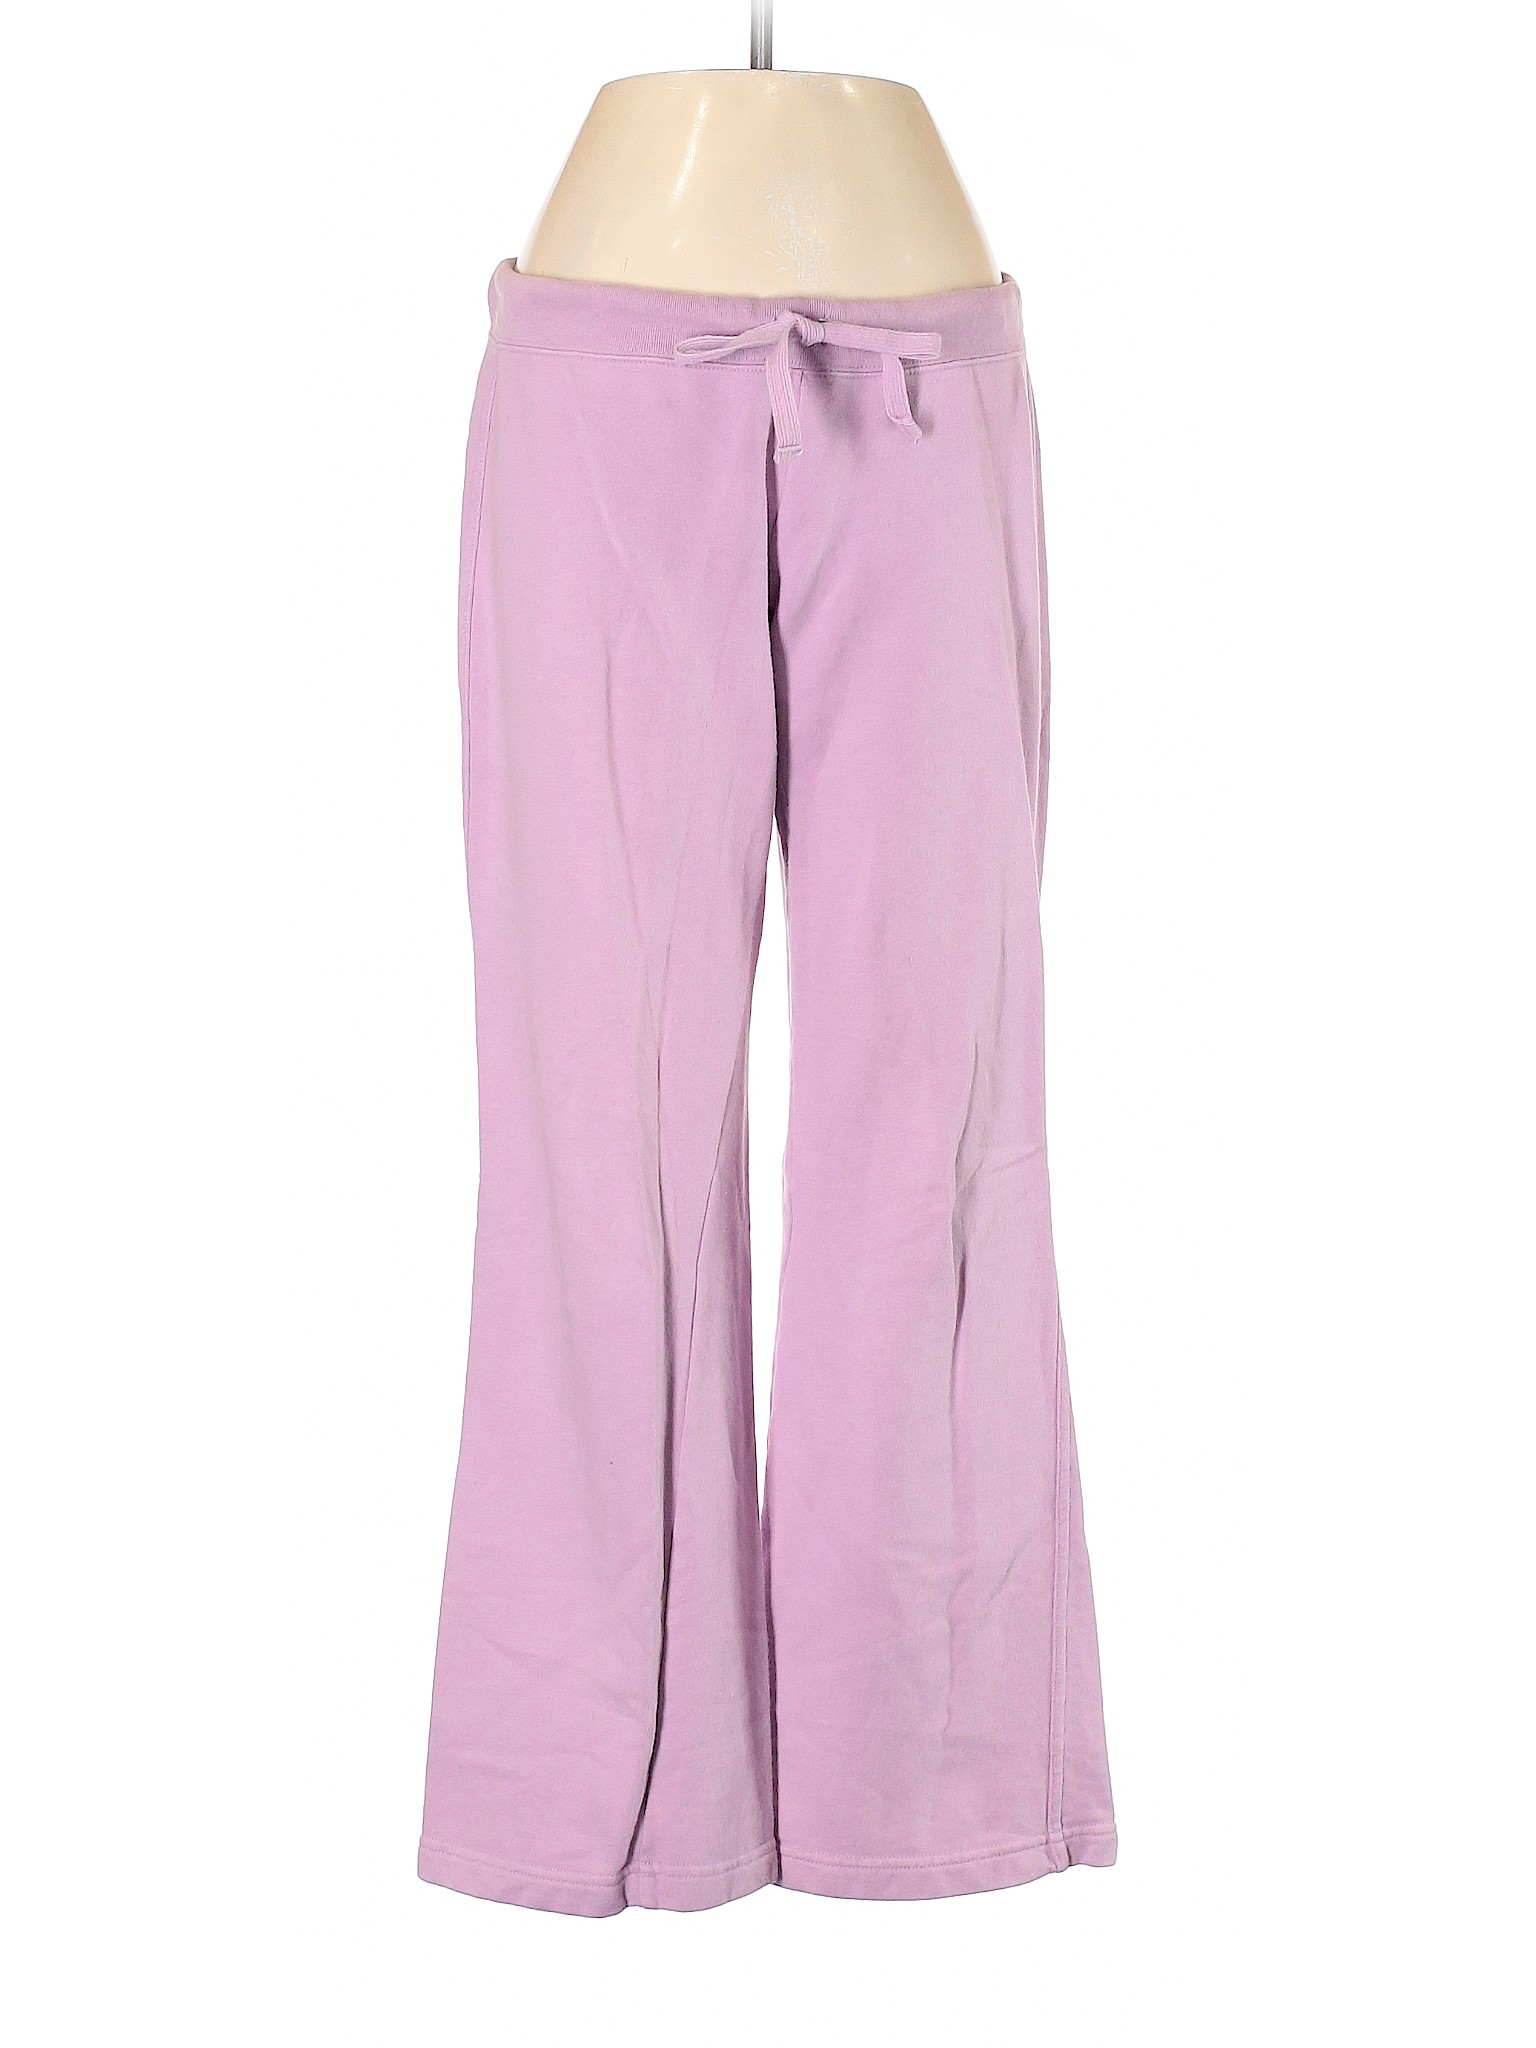 Gap Women Purple Sweatpants XS | eBay